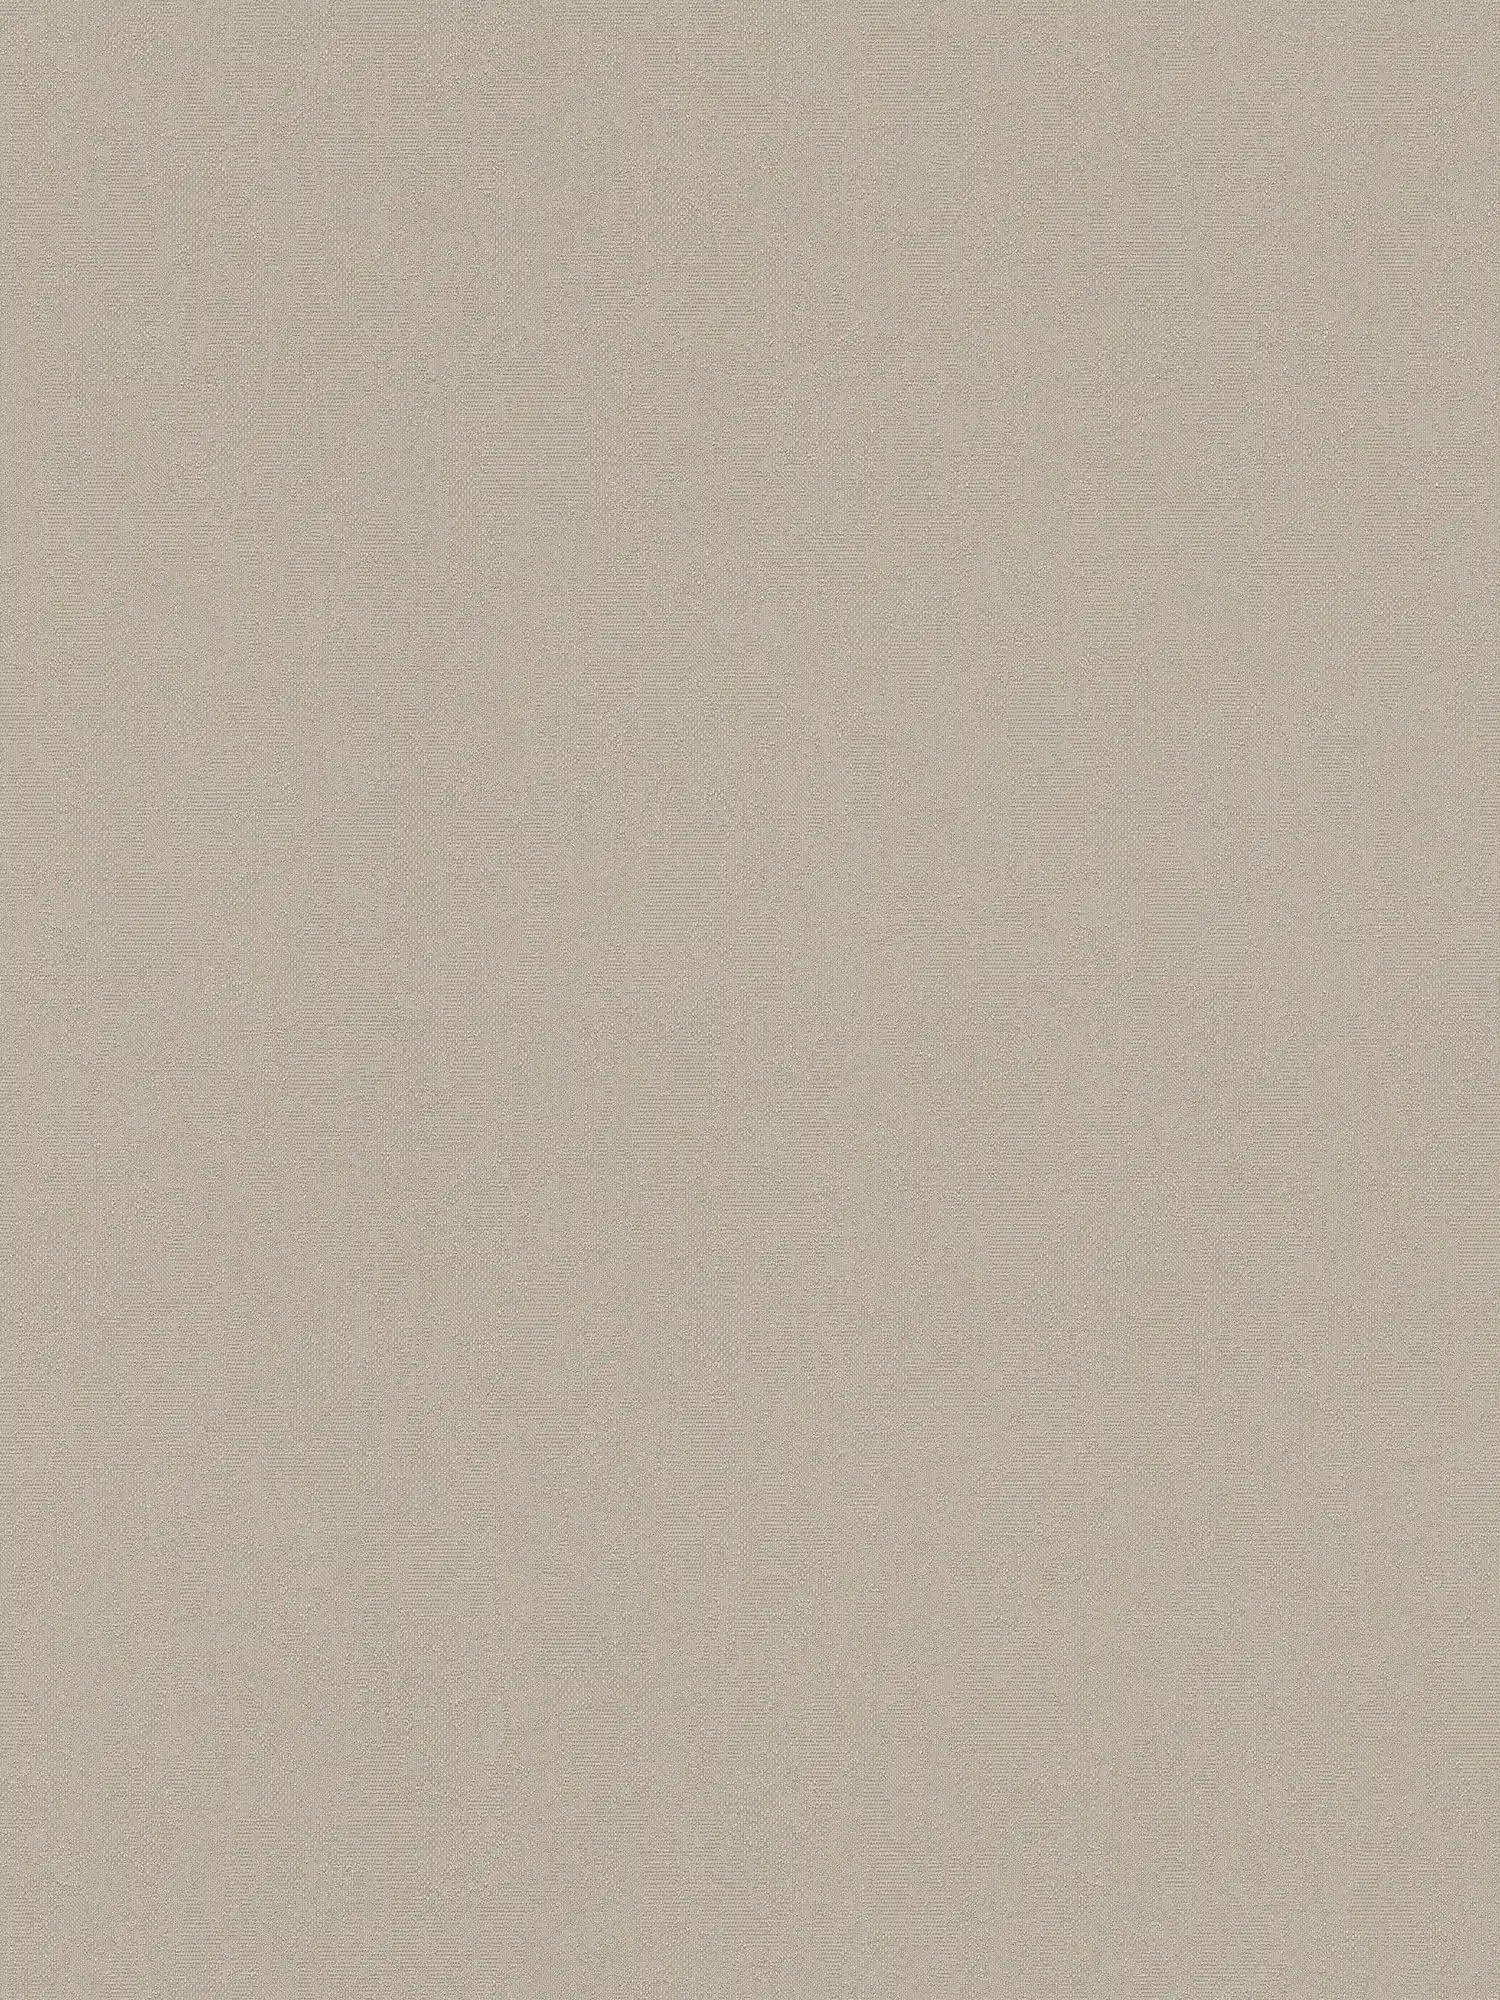 Papier peint uni neutre gris-beige avec surface structurée
